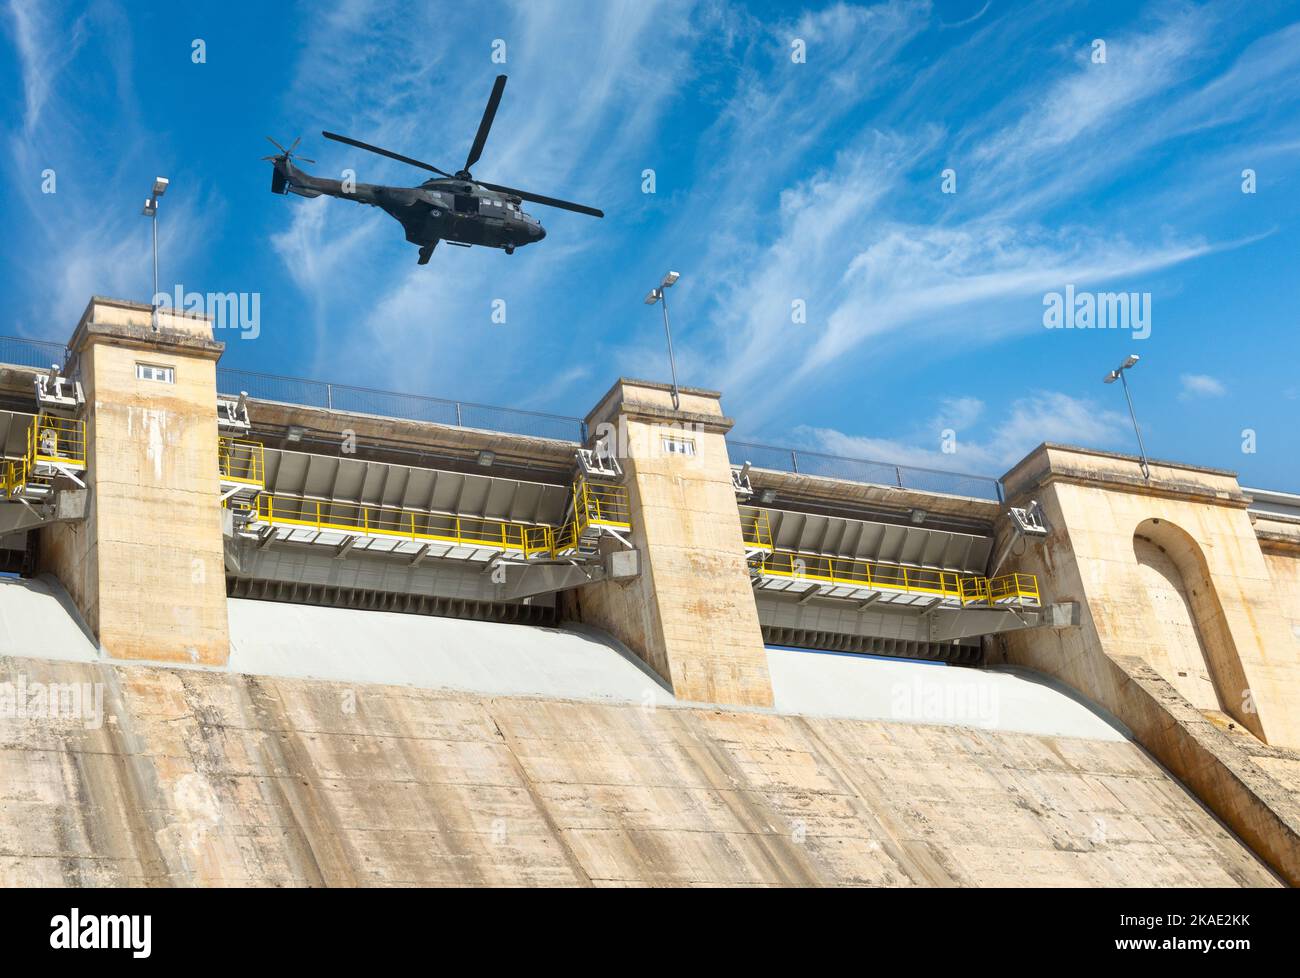 Elicottero militare che sorvola la diga idroelettrica. Immagine del concetto: Attacco militare al potere dell'Ucraina, infrastrutture energetiche, Russia, conflitto, guerra. Foto Stock